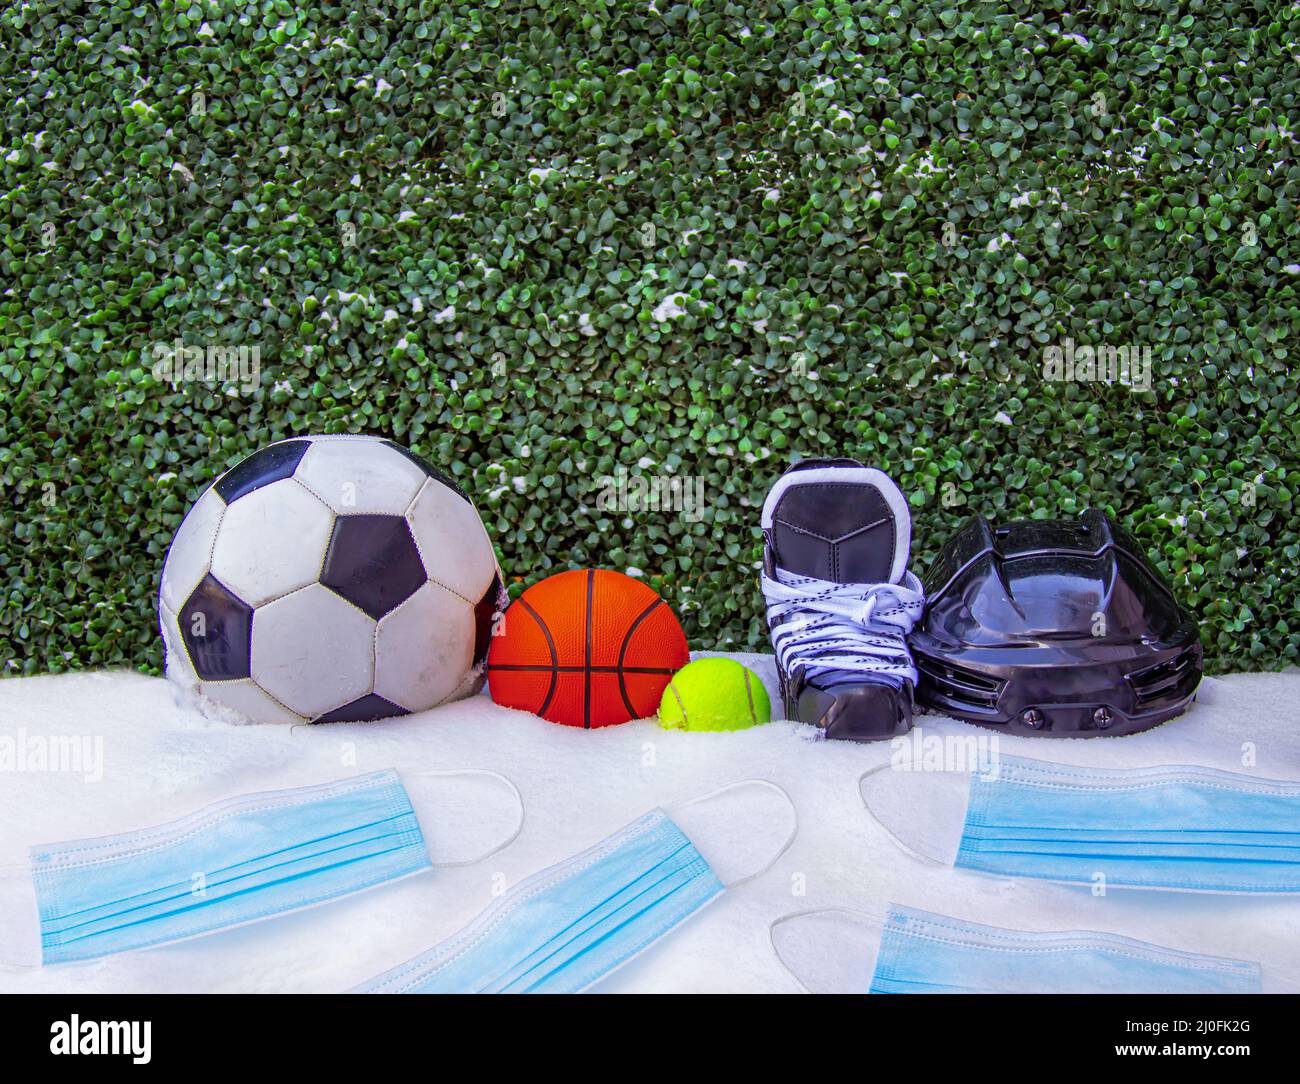 Una palla da calcio o calcio, basket ball, tennis ball, pattini con un casco sulla neve con maschere per il viso. Concetto: Sport durante l'inverno Foto Stock